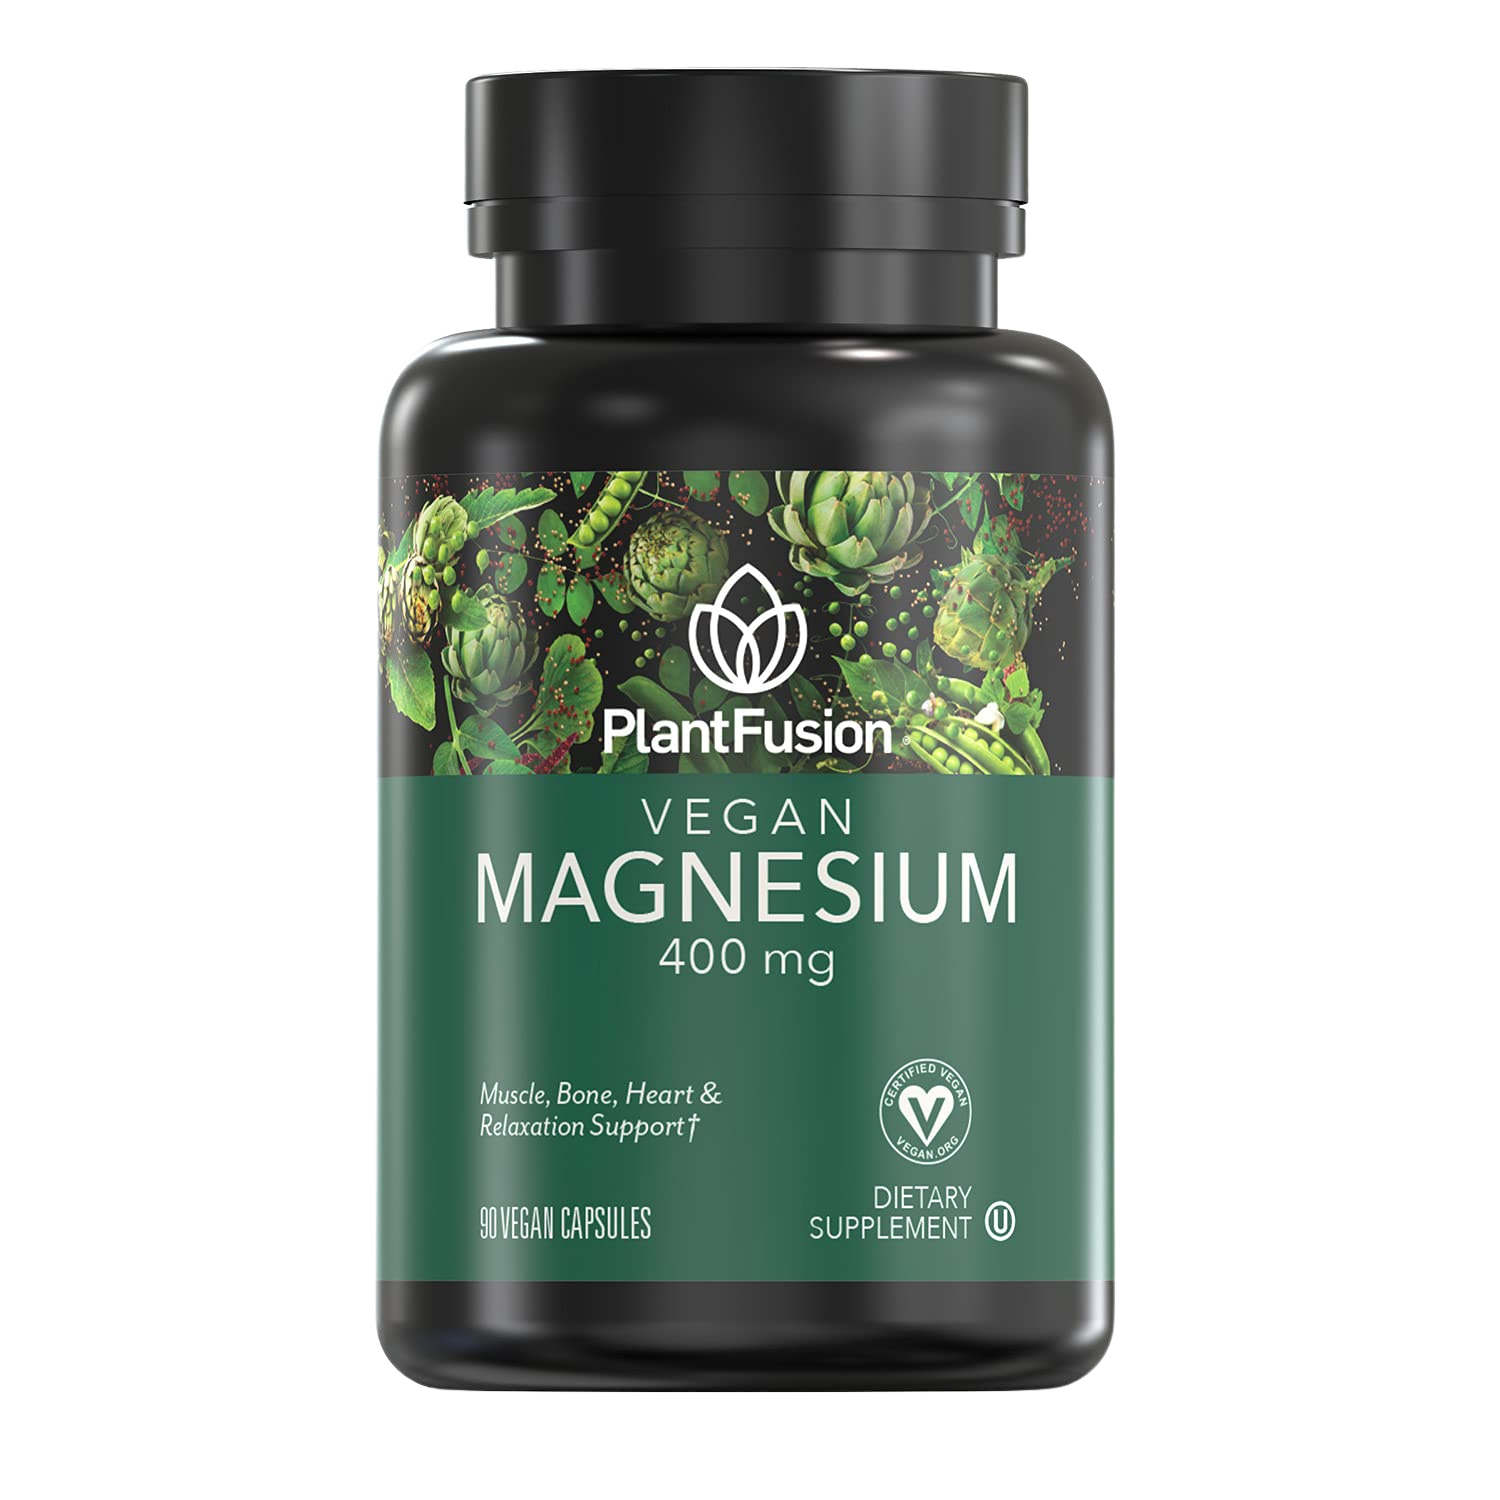 PlantFusion Vegan Magnesium Supplement